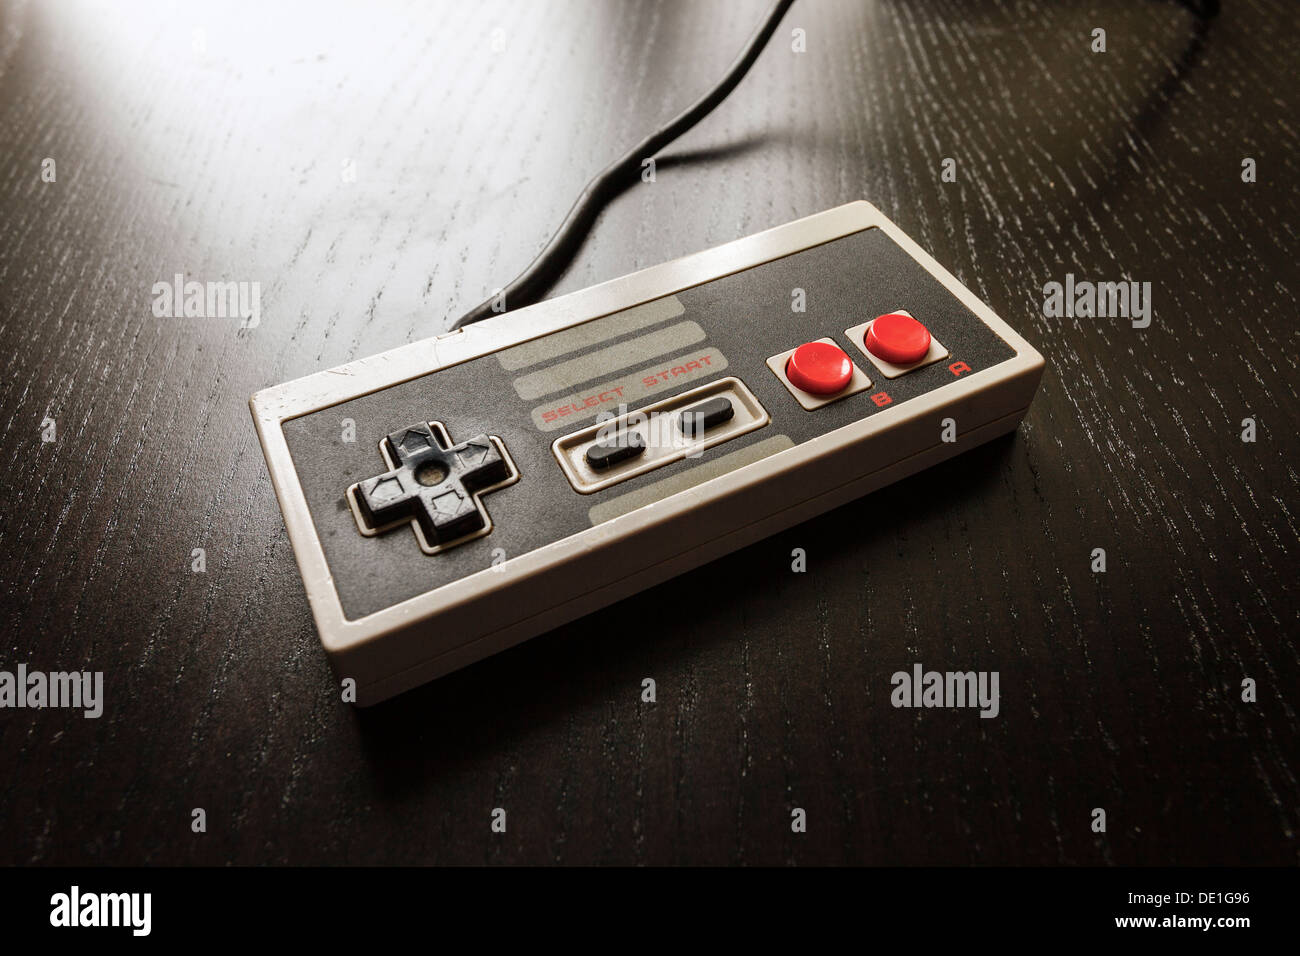 Nintendo nes immagini e fotografie stock ad alta risoluzione - Alamy